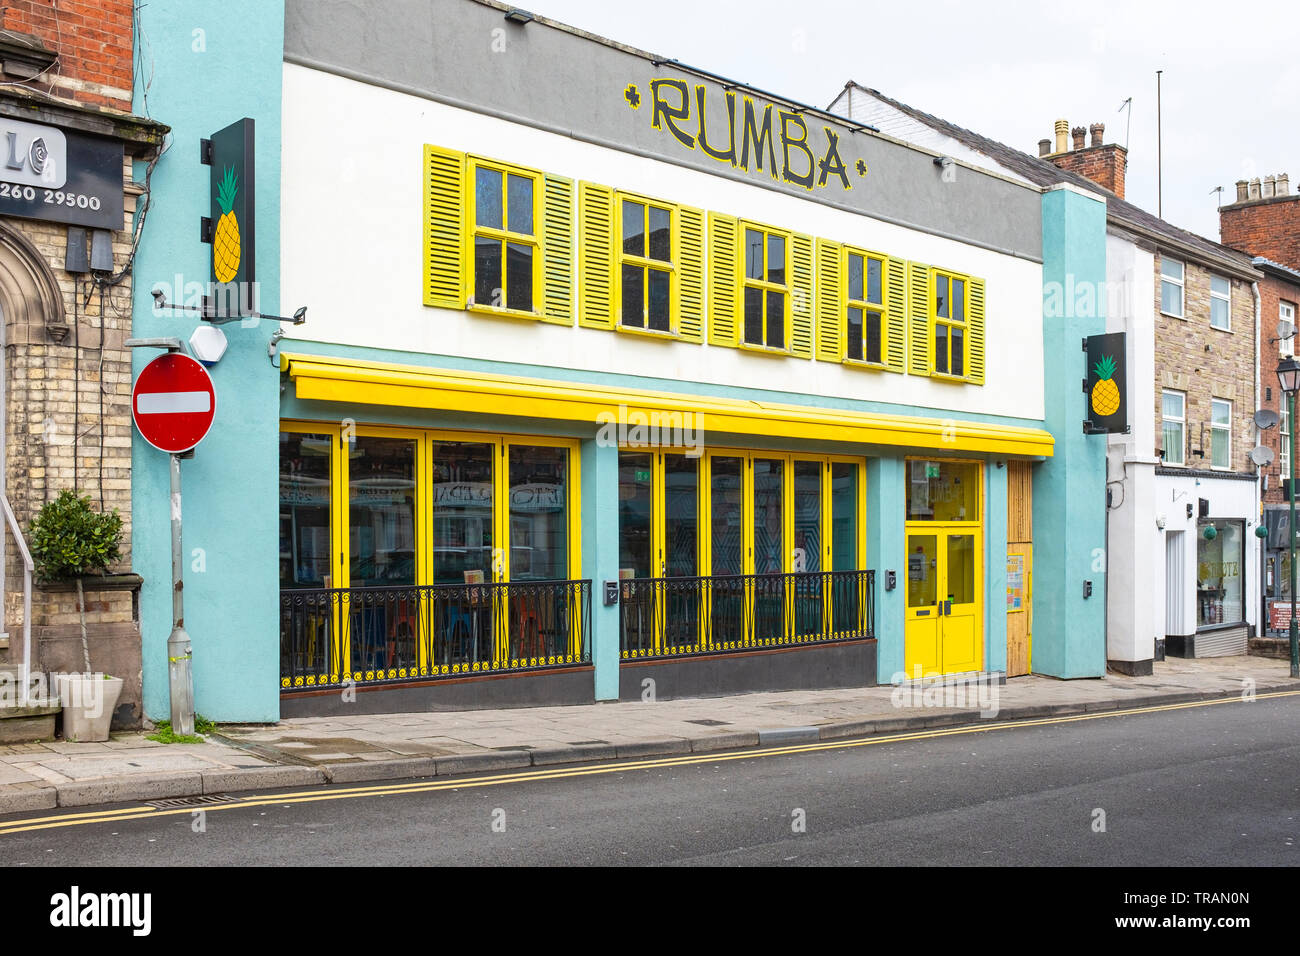 Rumba bar in Congleton Cheshire UK Stock Photo